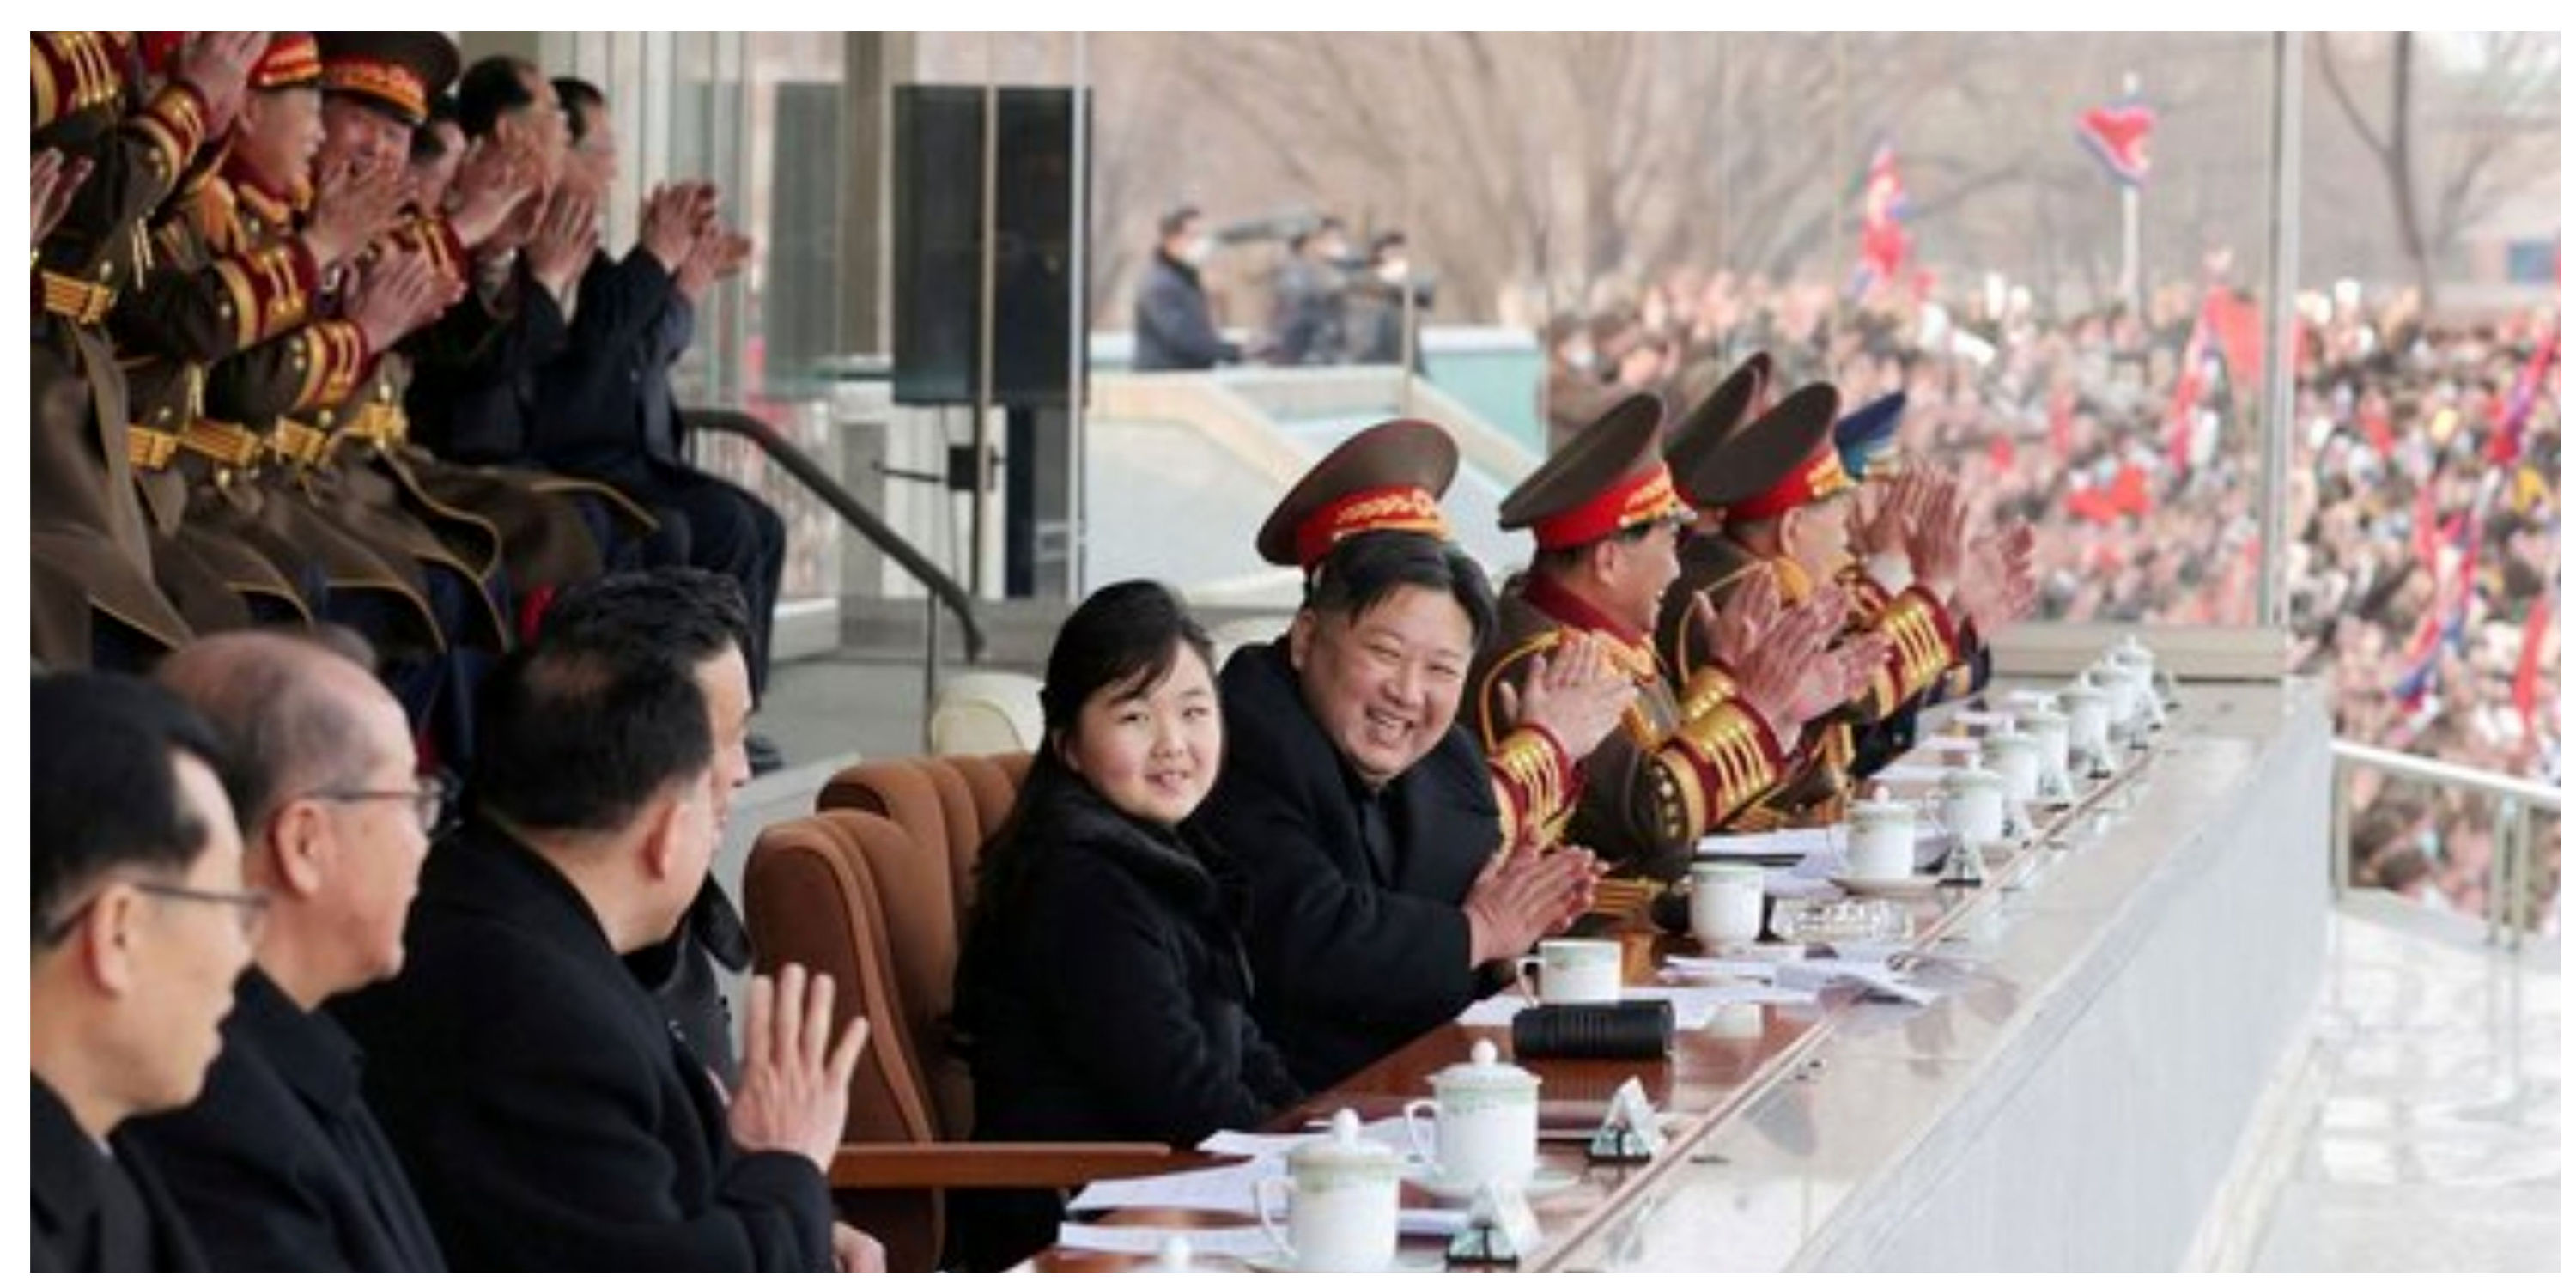 افشای اطلاعات سری درباره دختر رهبر کره شمالی